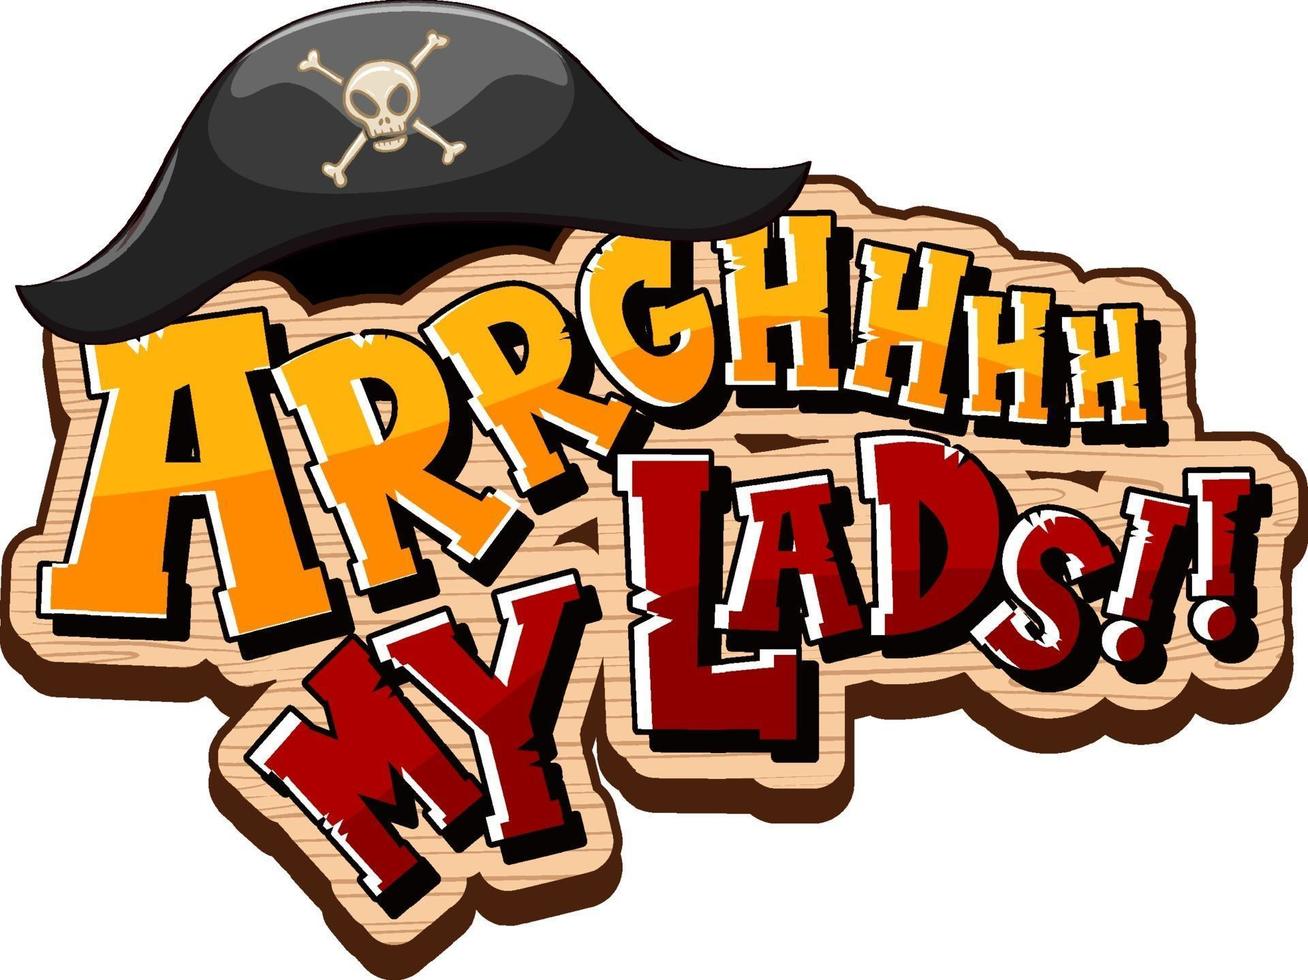 concepto de jerga pirata con el logotipo de frase arrgh my chicos vector